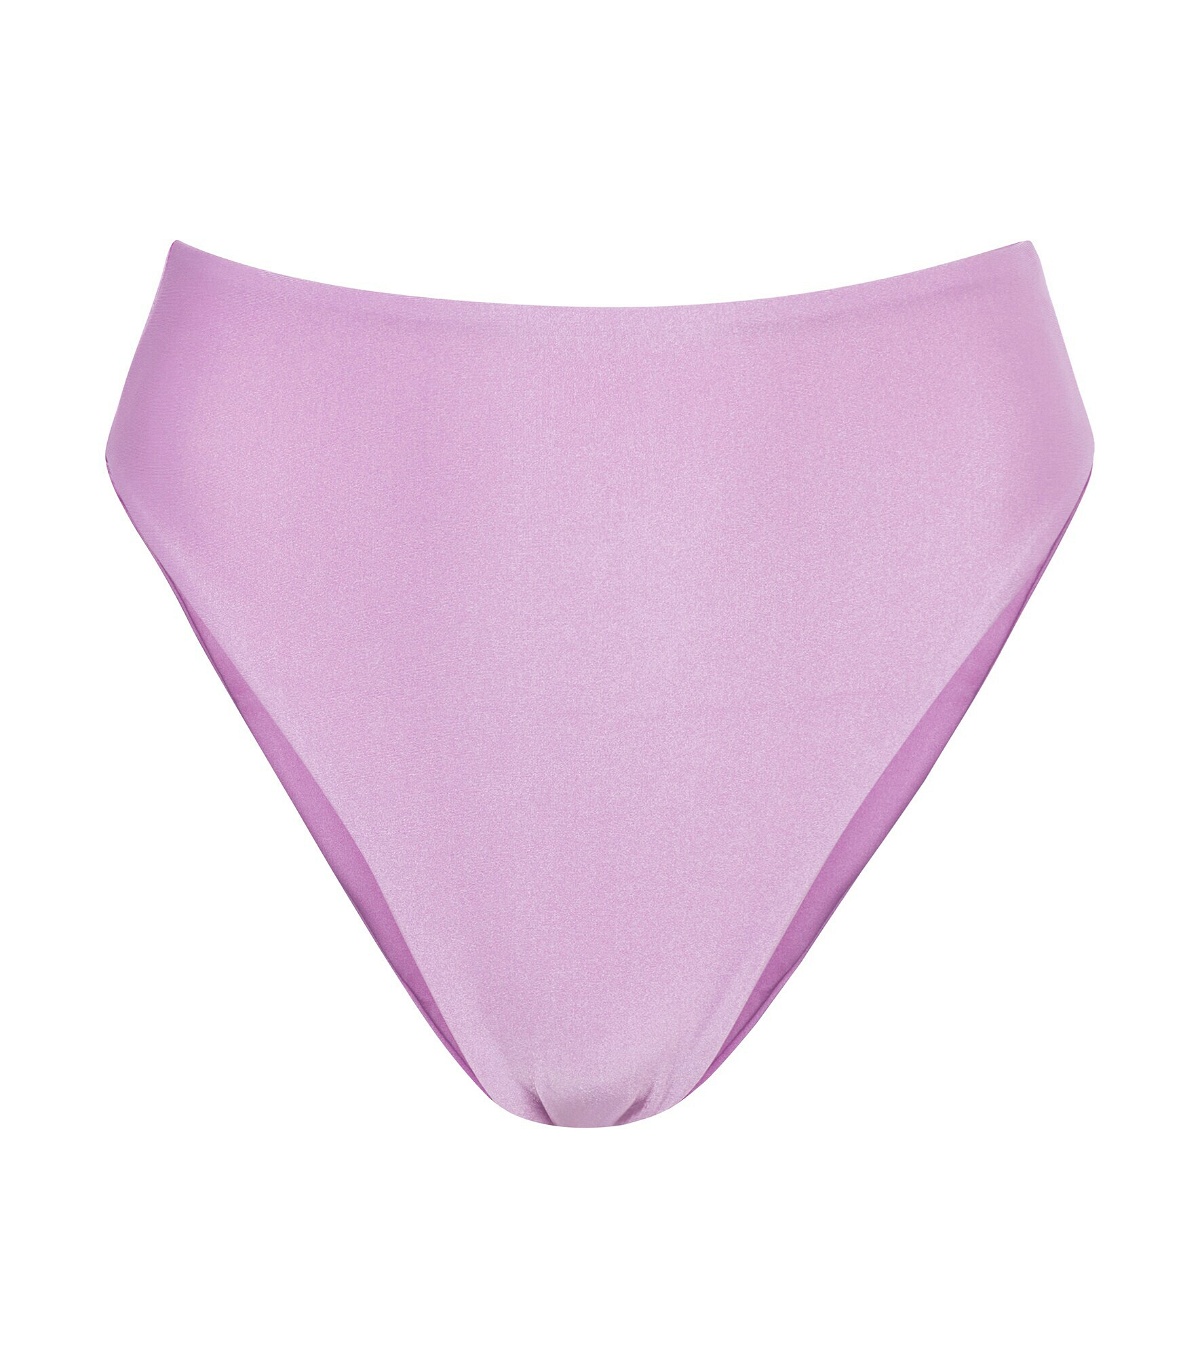 Jade Swim - Incline bikini bottoms Jade Swim